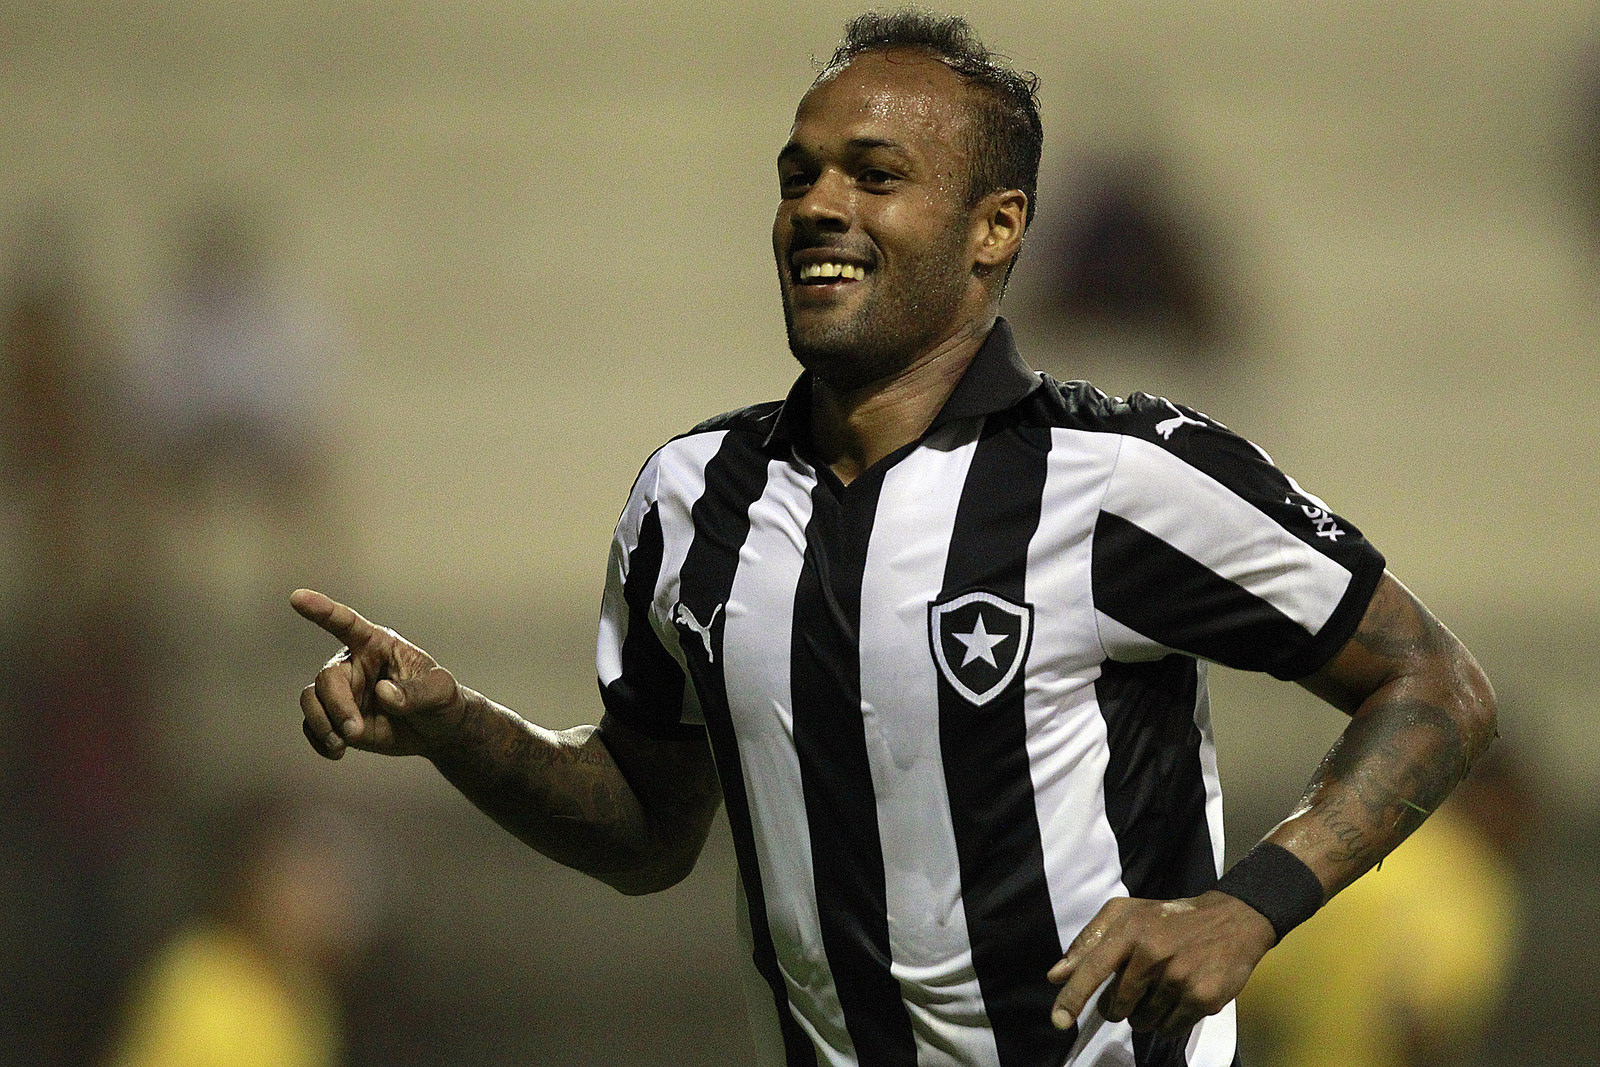 Bruno Silva comemora boa fase no Botafogo e descarta mudar estilo de jogo